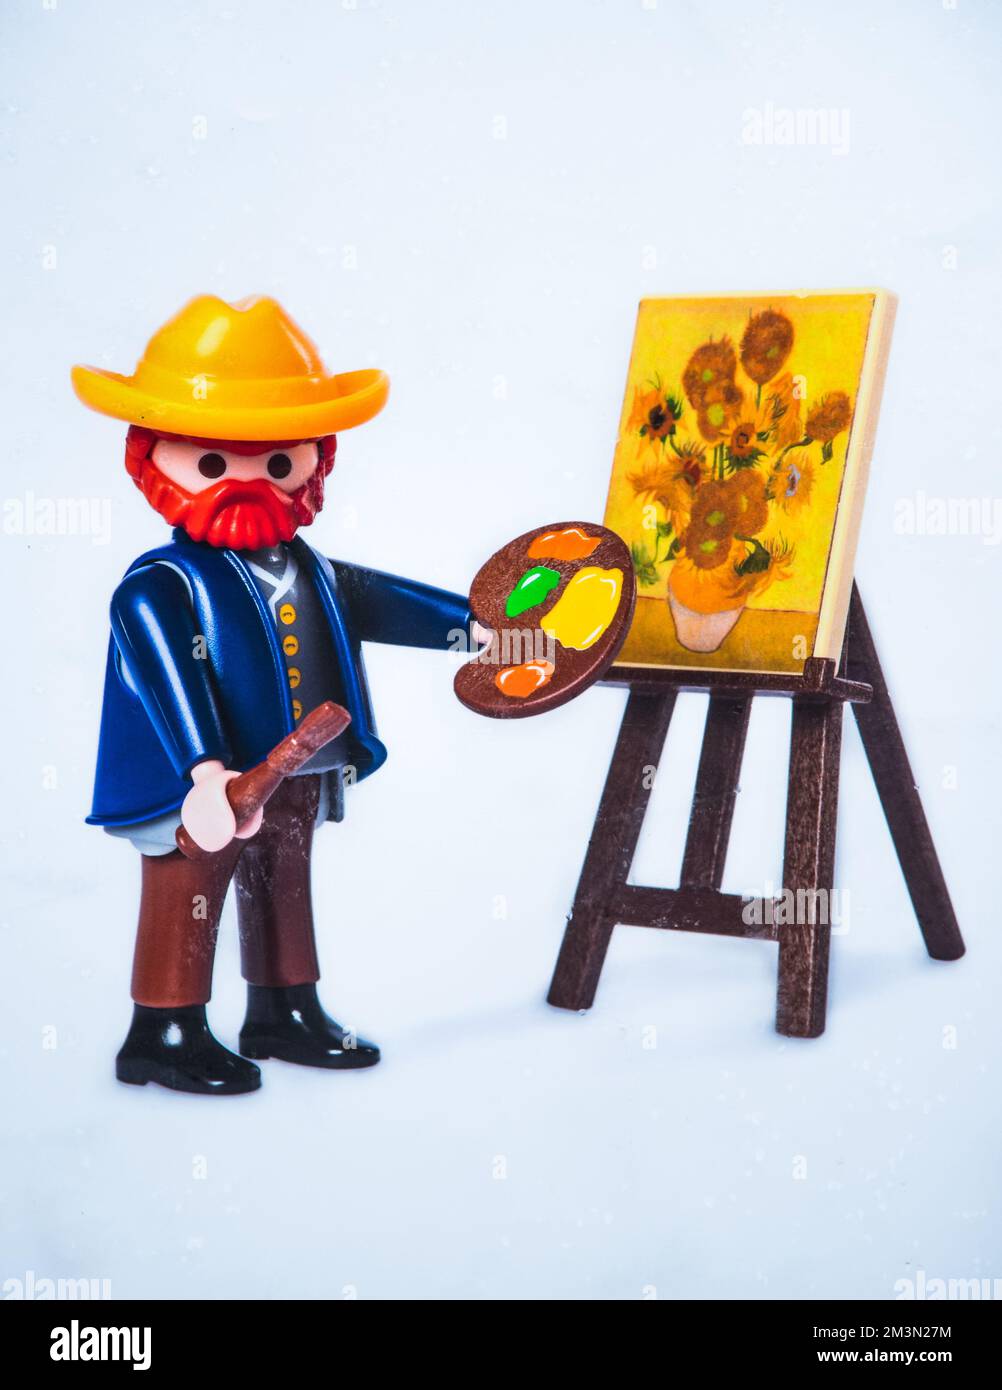 Playmobil character Banque de photographies et d'images à haute résolution  - Alamy